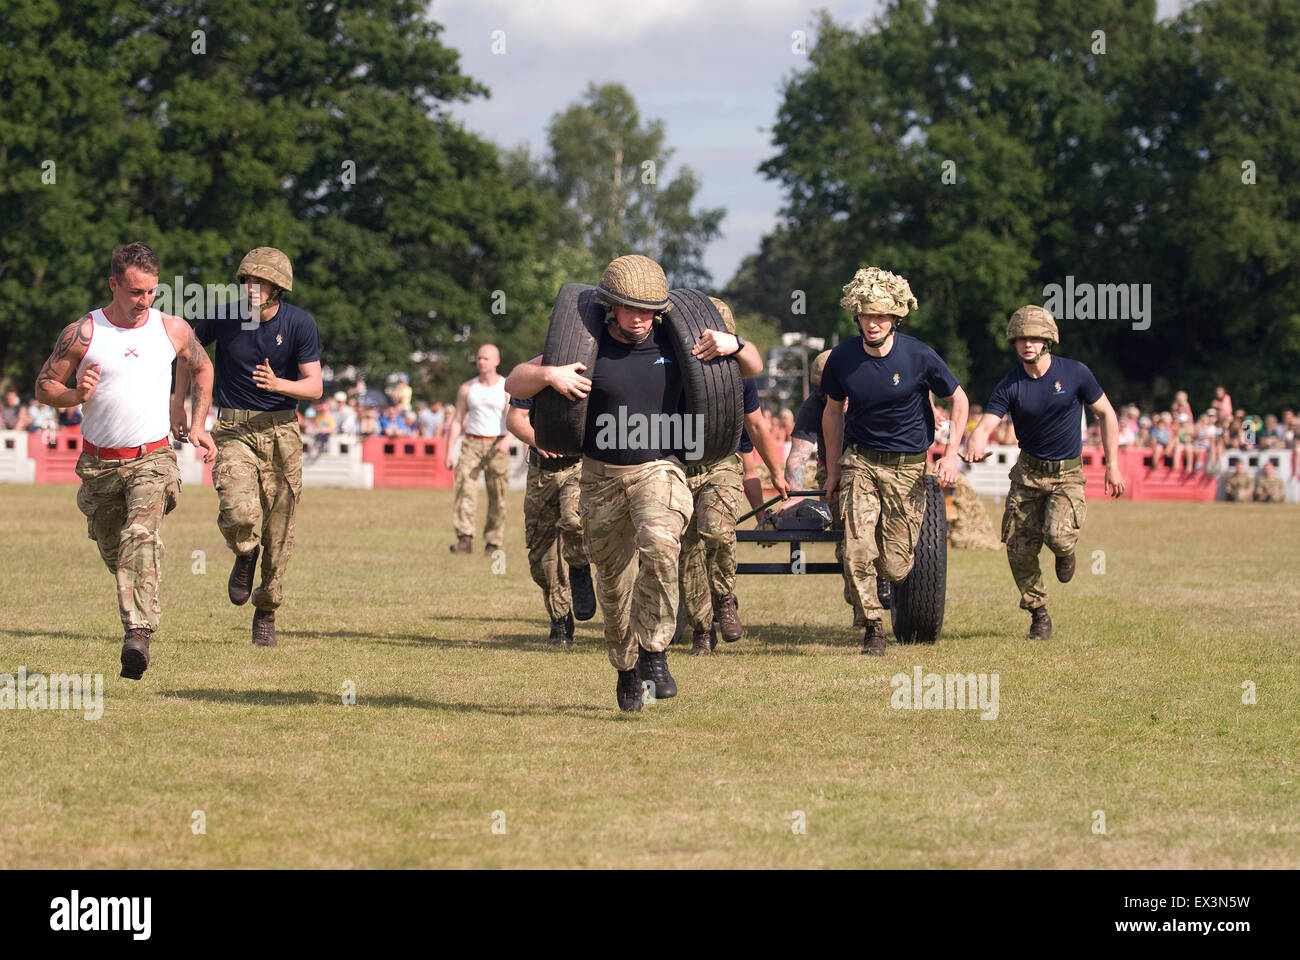 Trg 10 milliards d'armes à feu de peloton entre courir à l'Adieu à la garnison Festival, Bordon, Hampshire, Royaume-Uni. Samedi 27 juin 2015. Banque D'Images